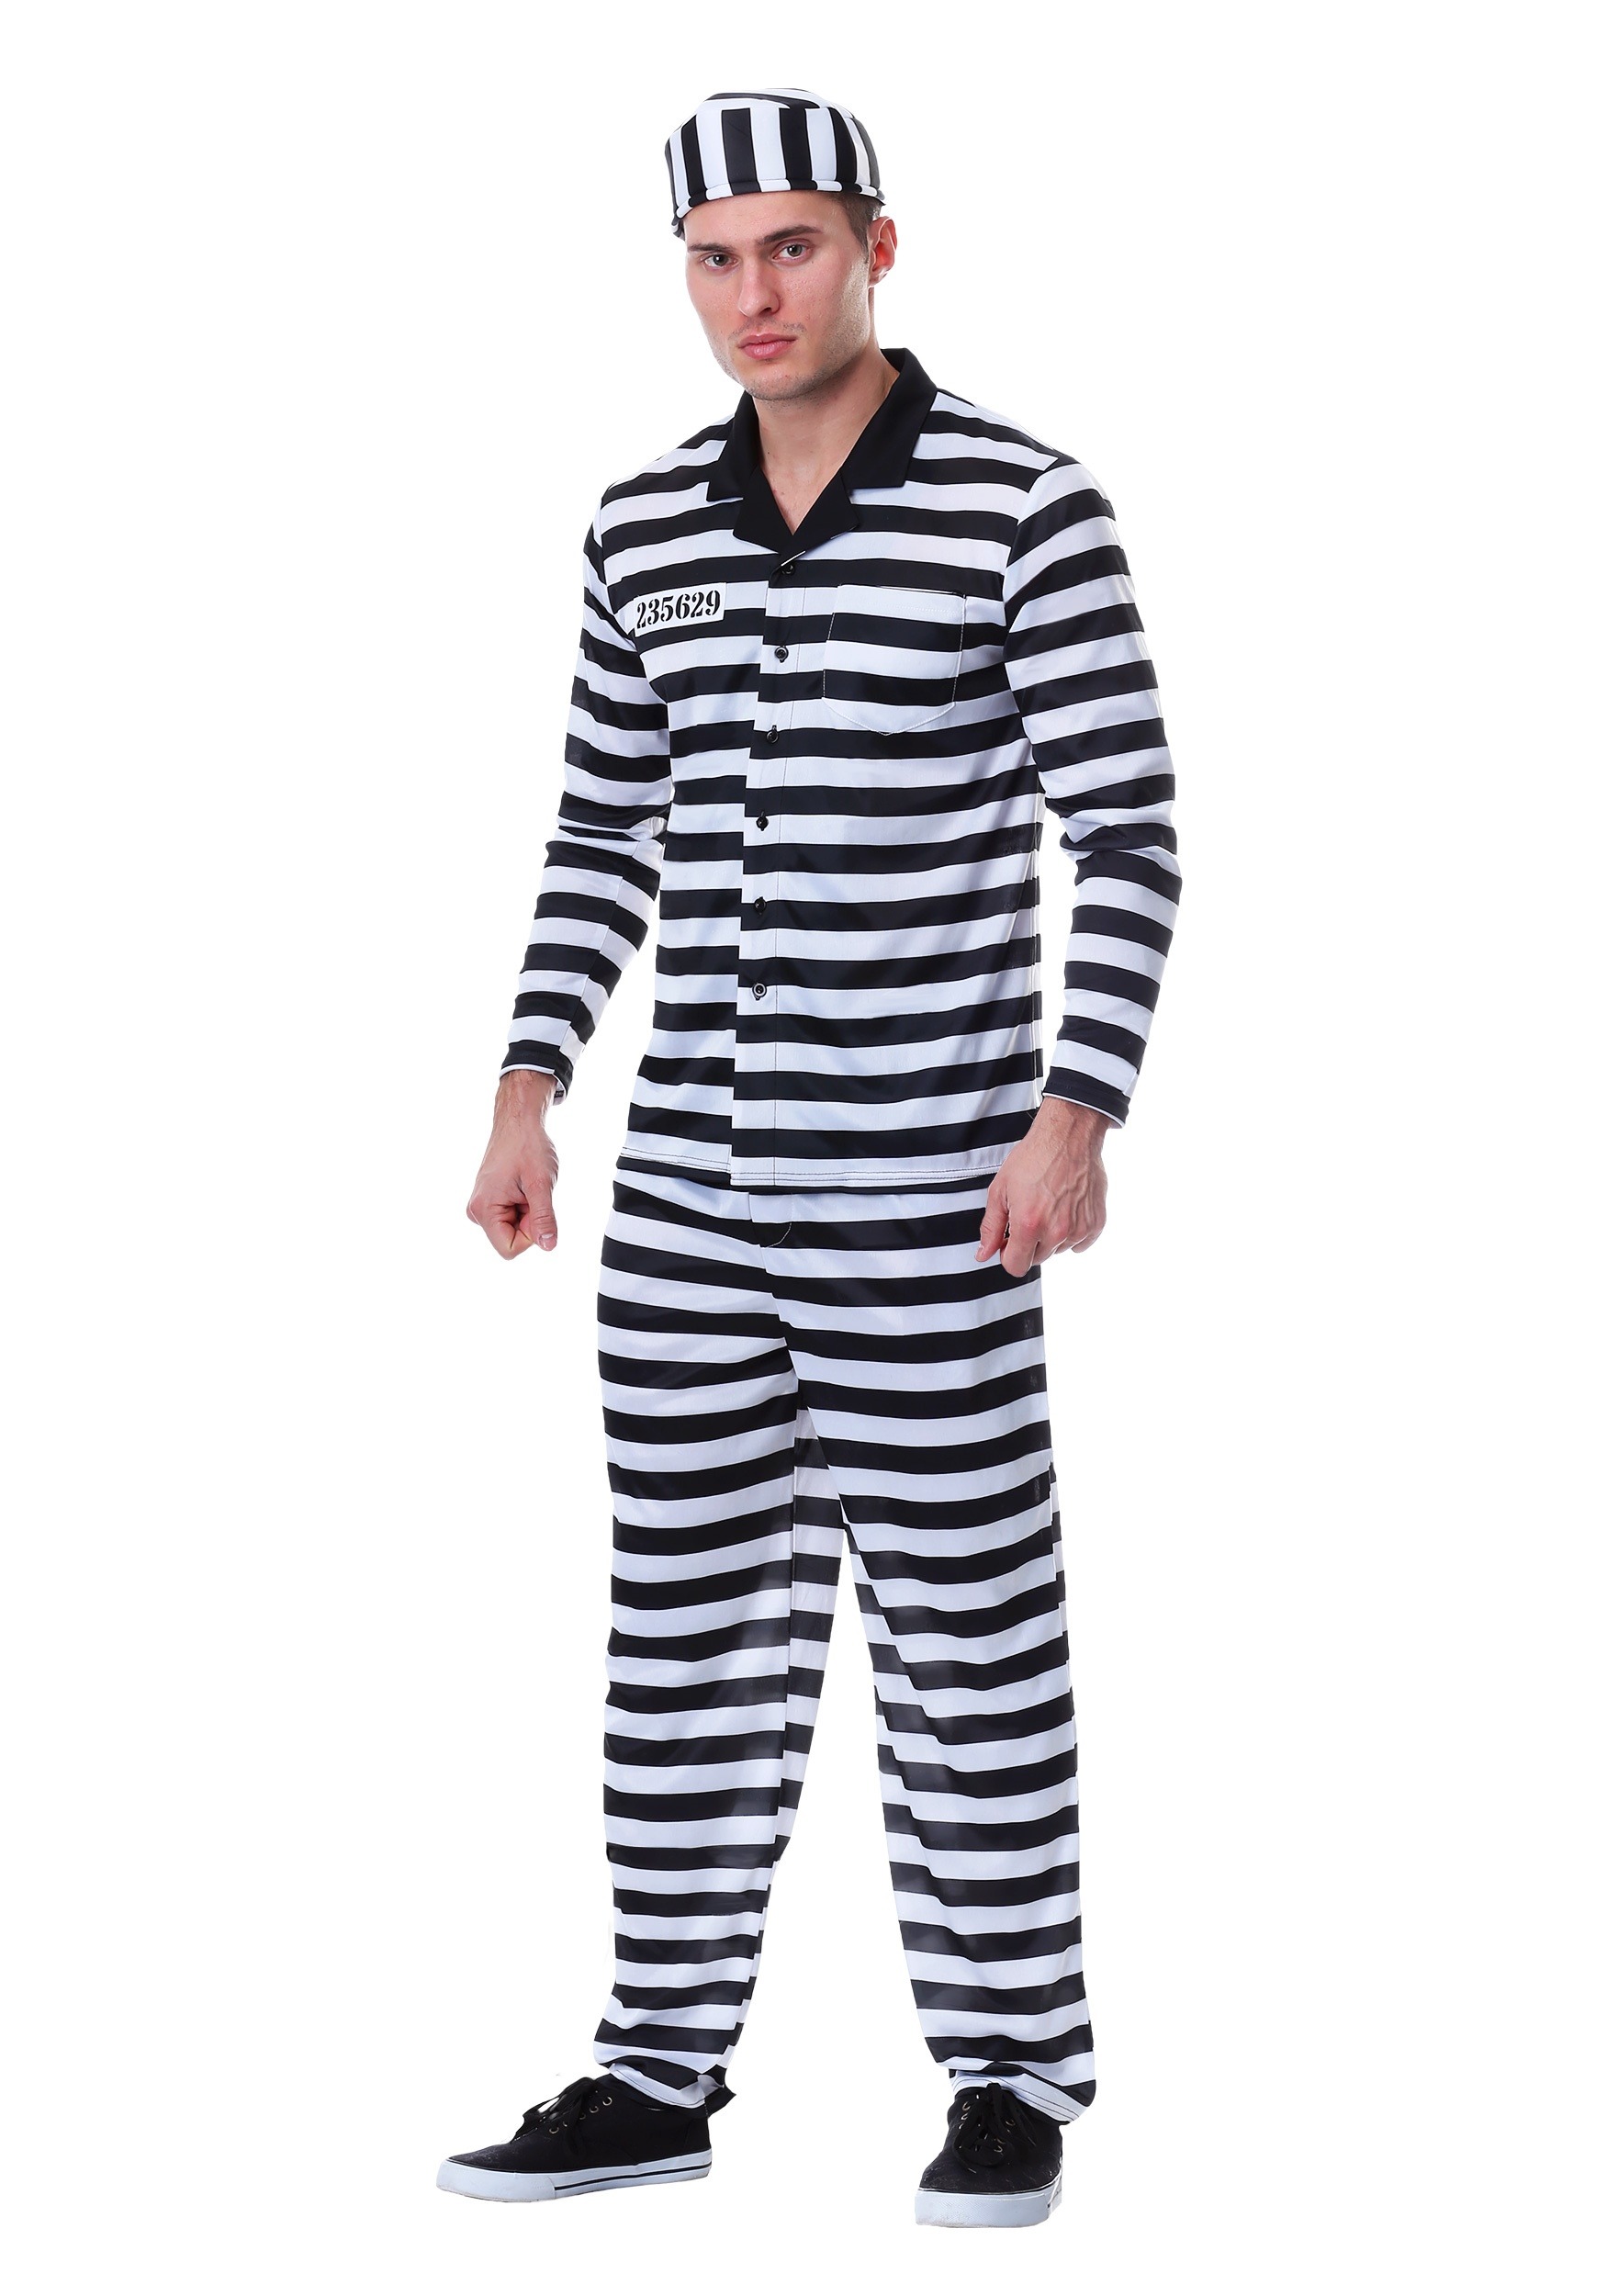 Jailbird Costume For Men